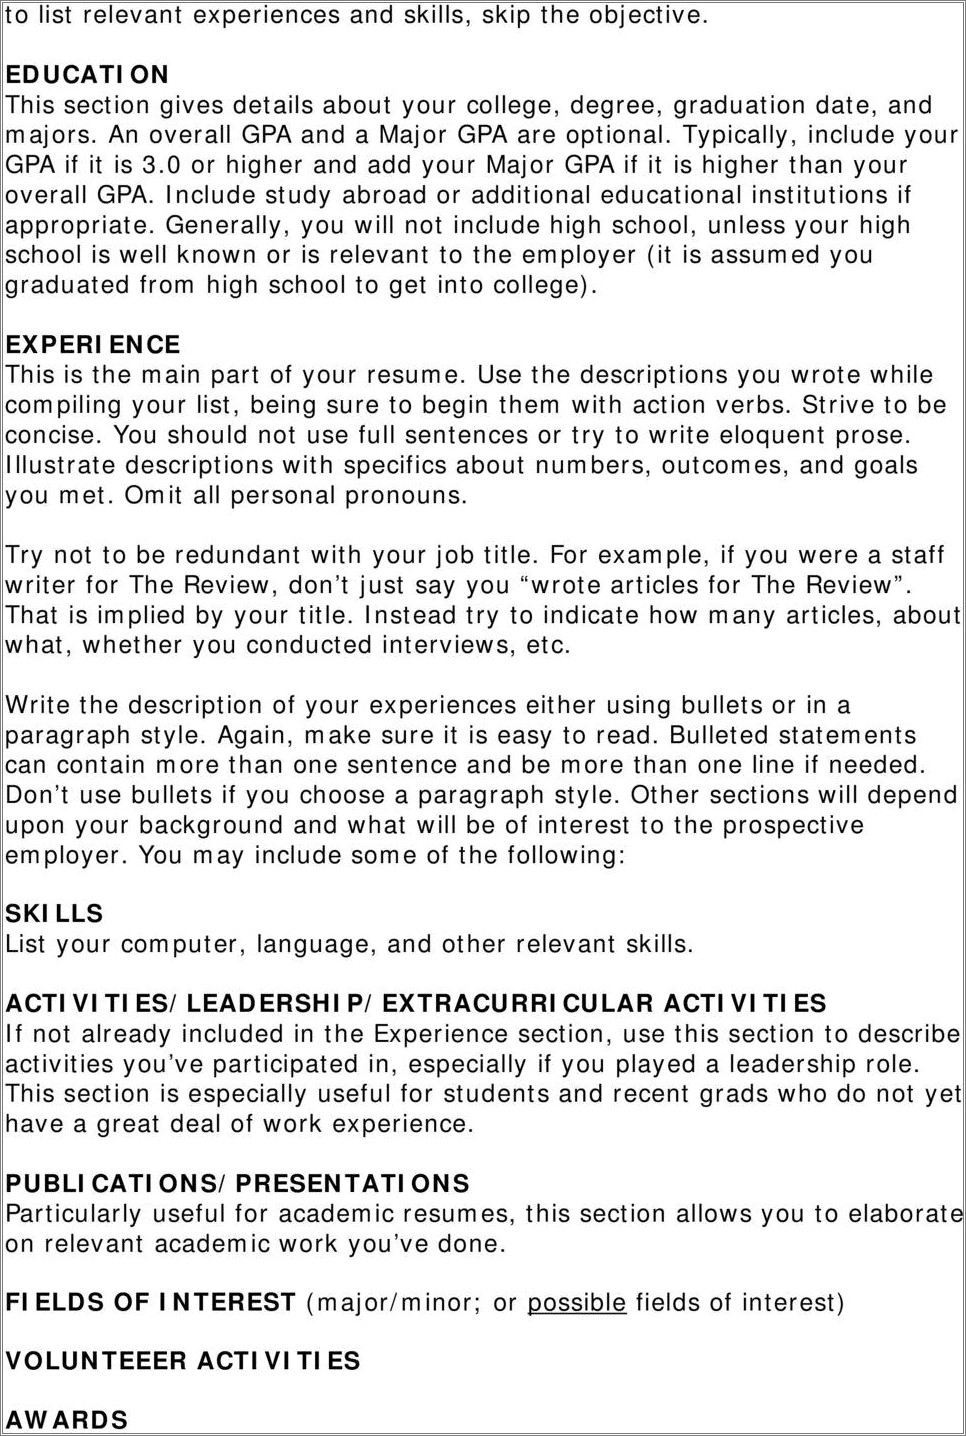 Include High School Activities On Resume